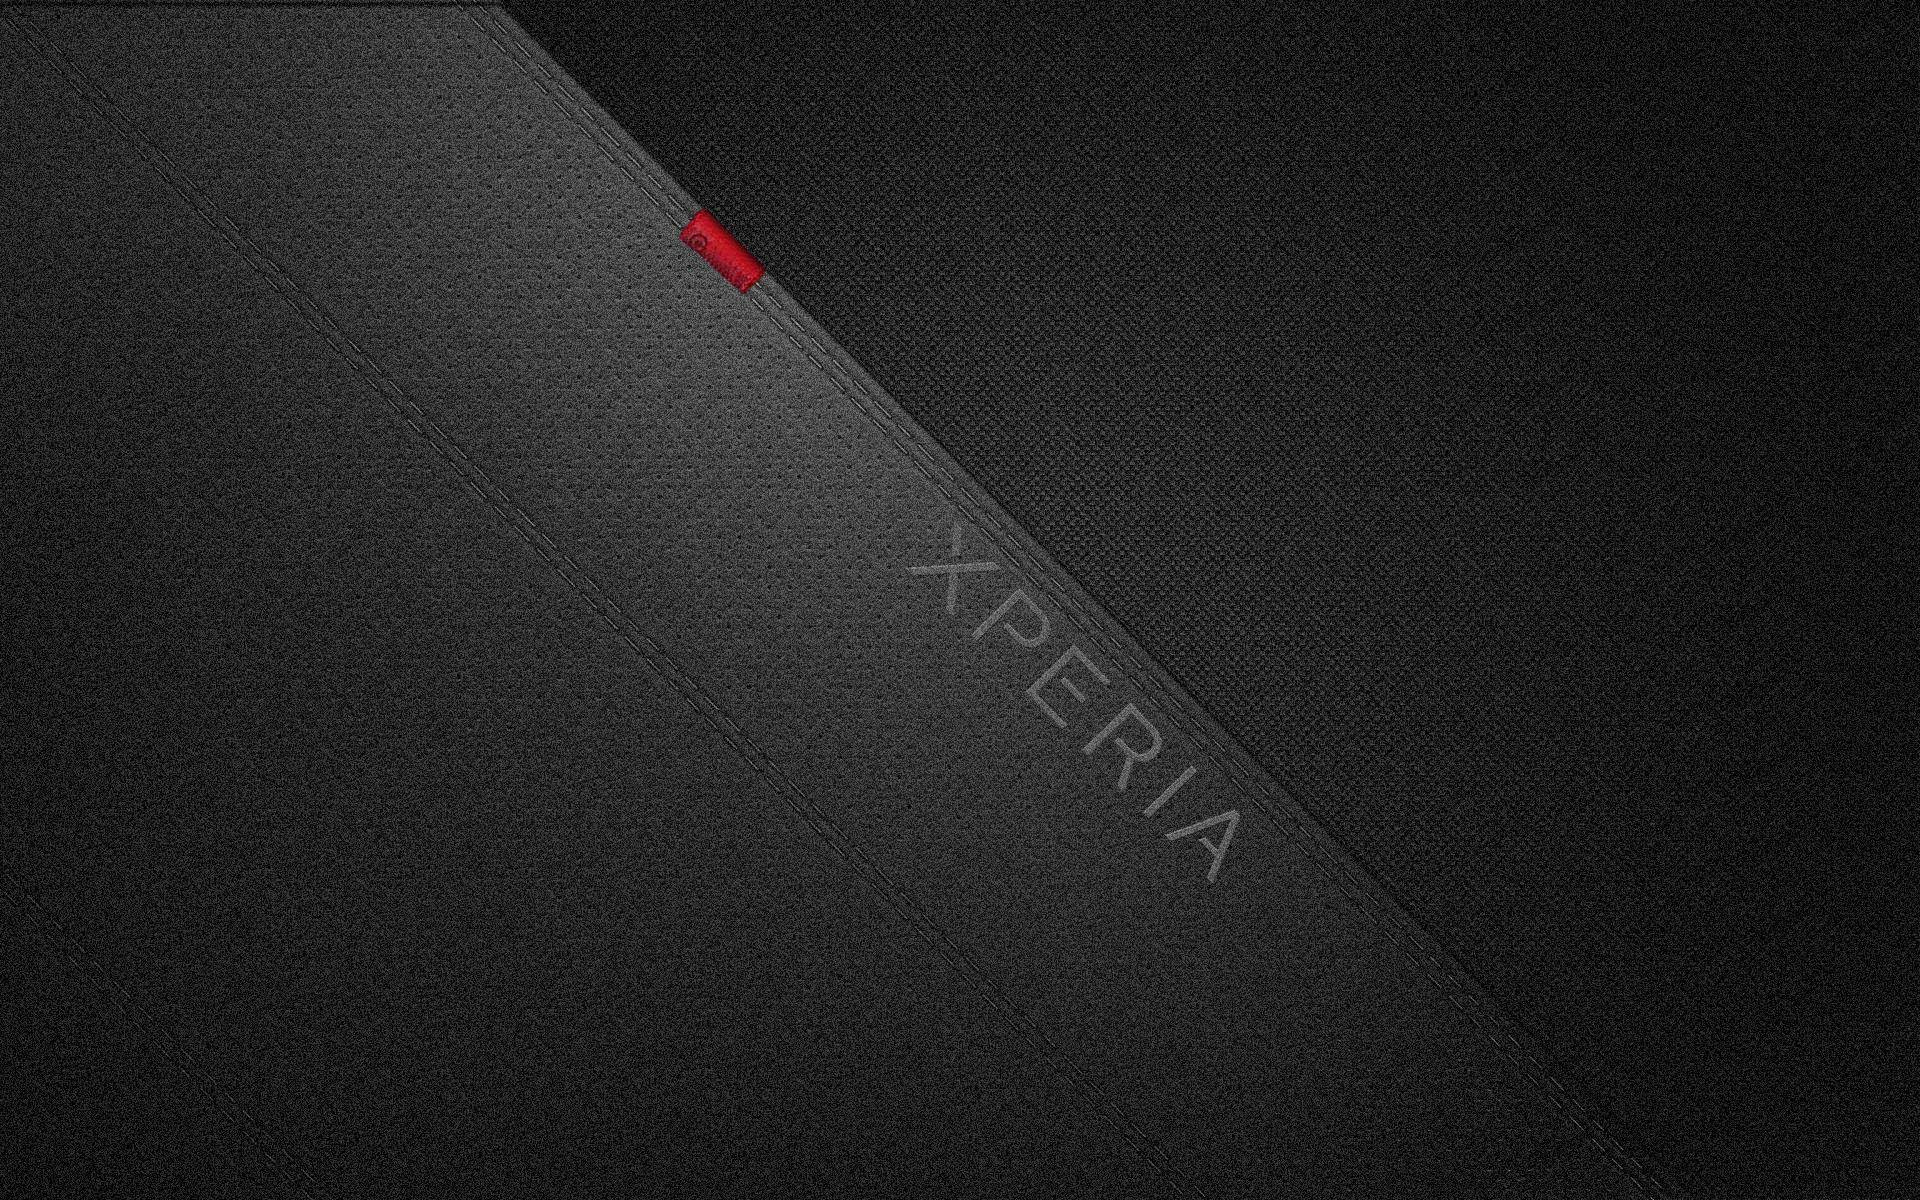 Xperia Z4 壁紙 Xperia Z4 Tablet 壁紙